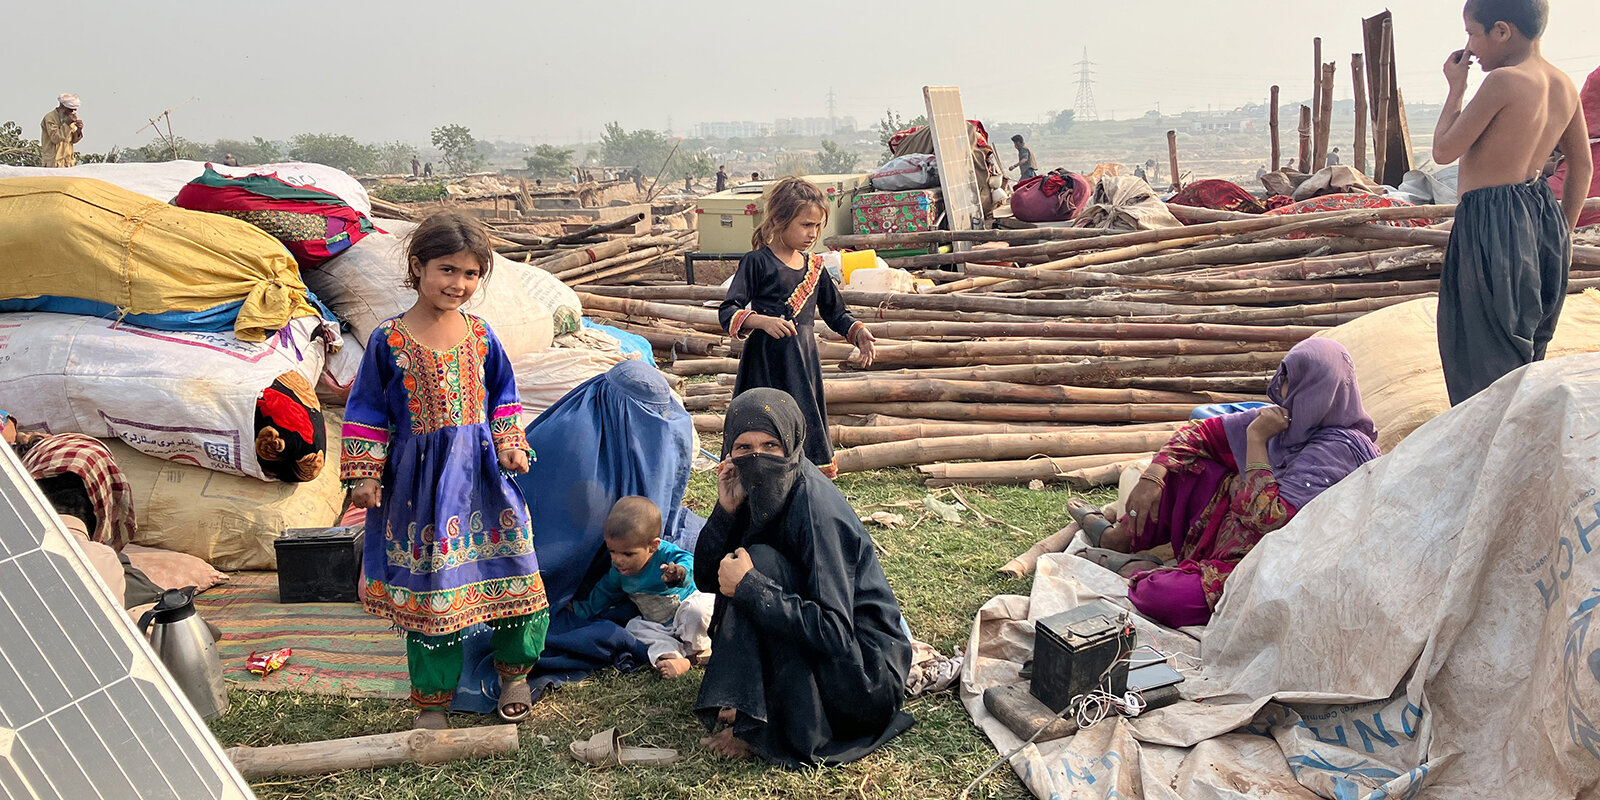 Pakistan: ONGe fäerten eng humanitär Katastroph